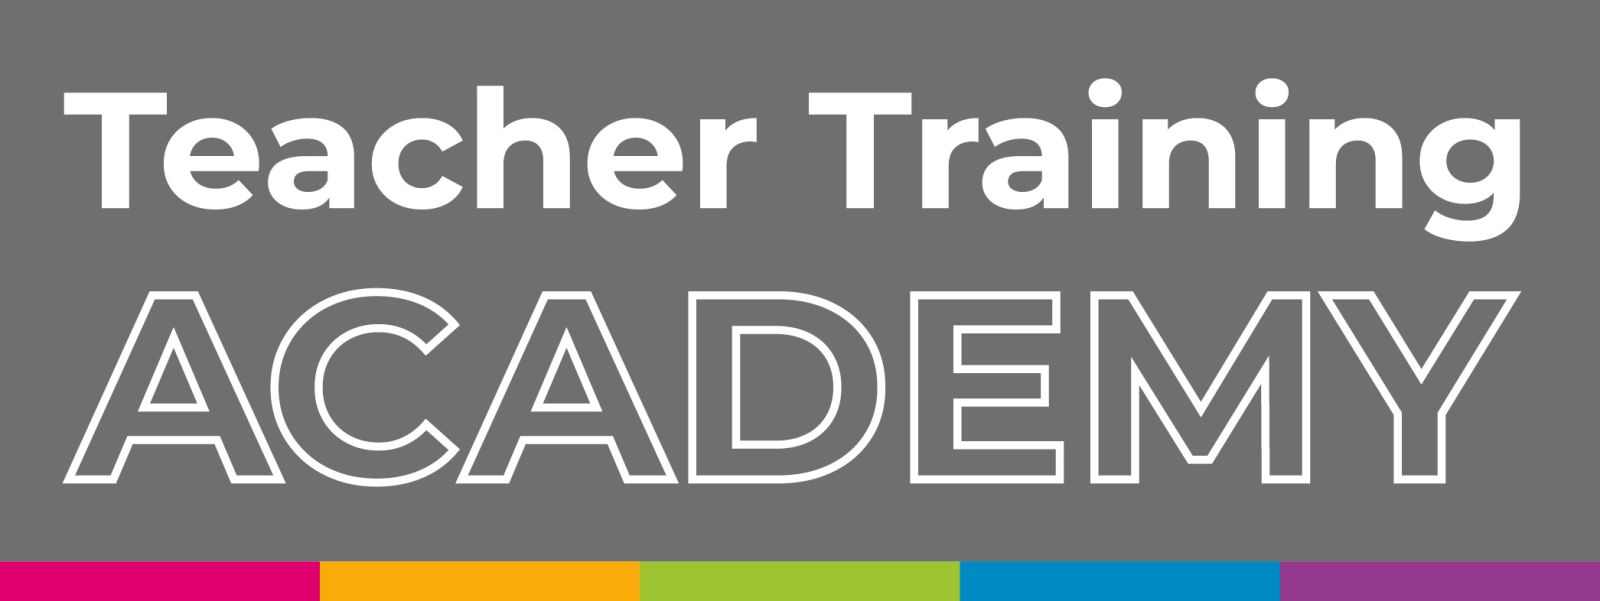 Teacher Training Academy Logo